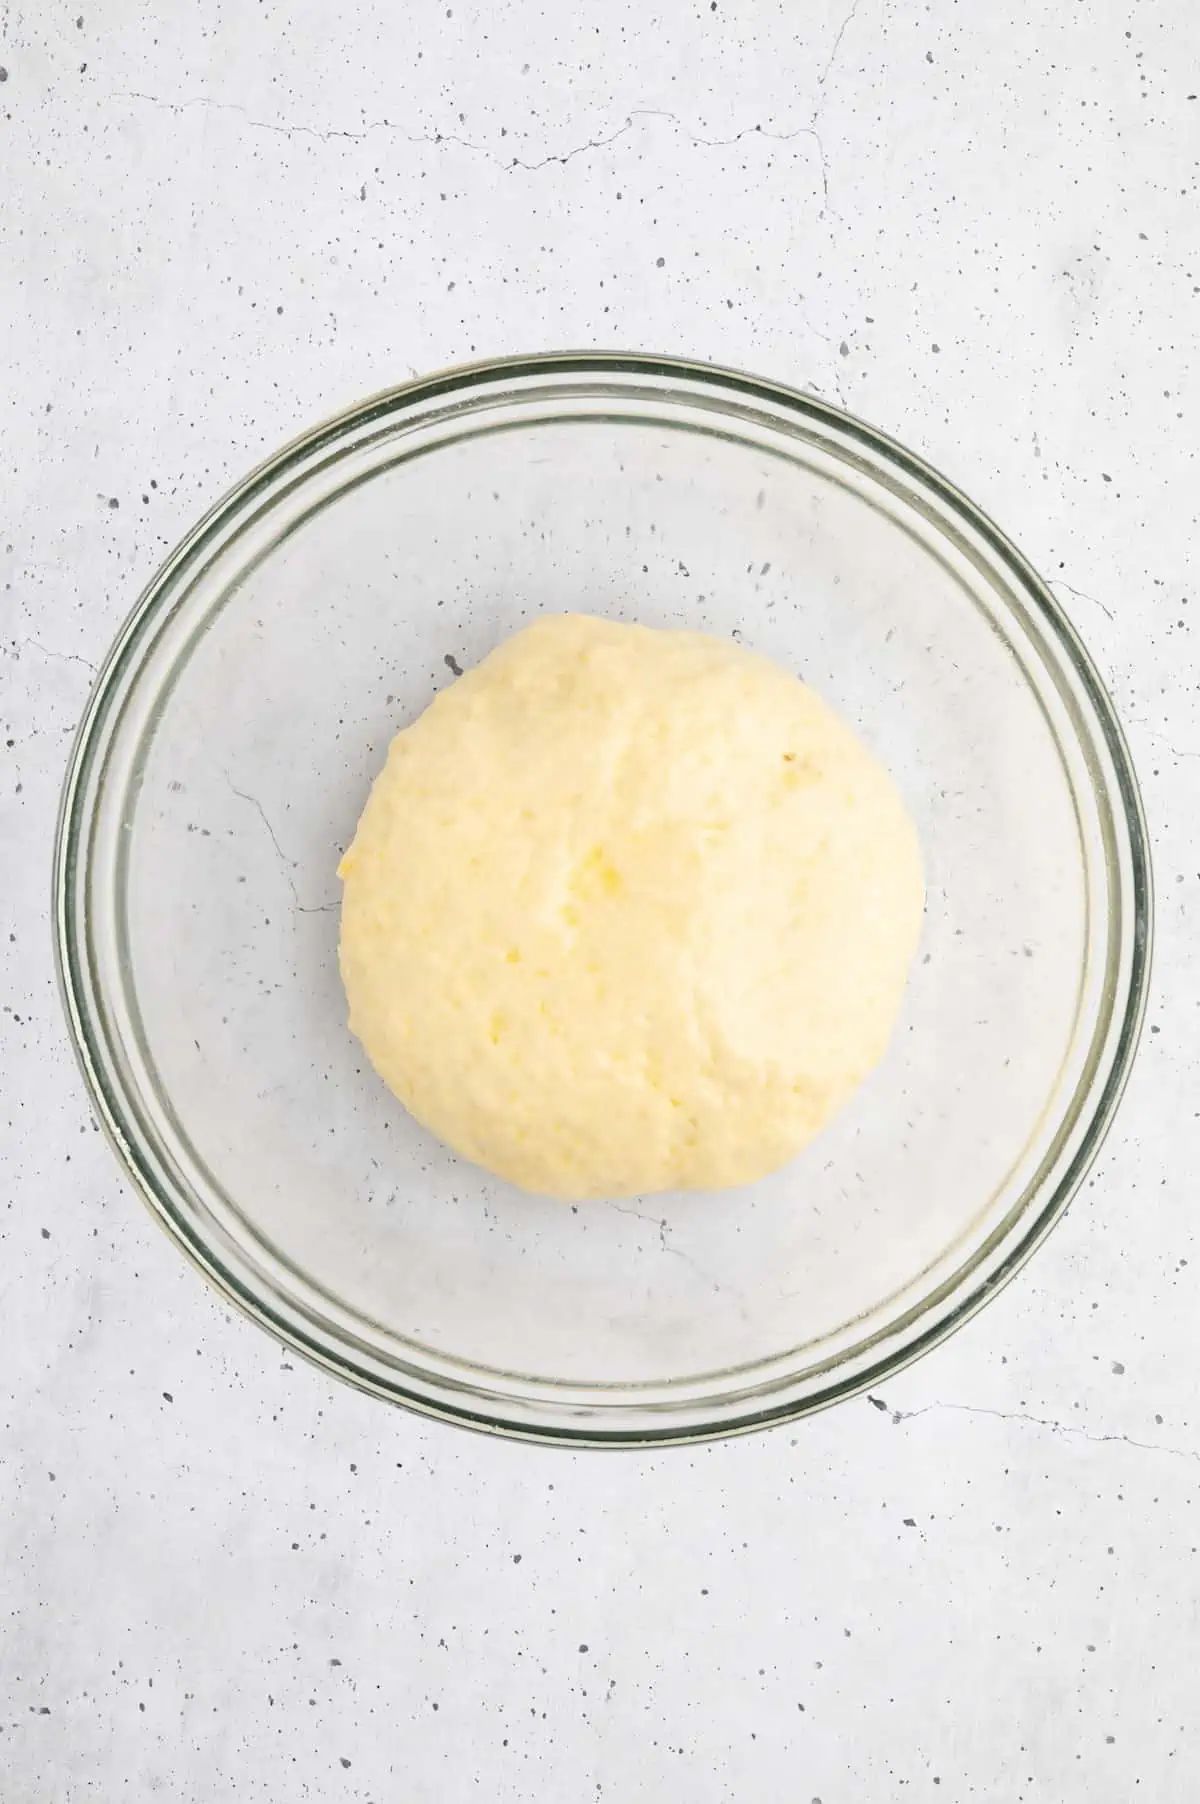 A ball of vegan bread dough.